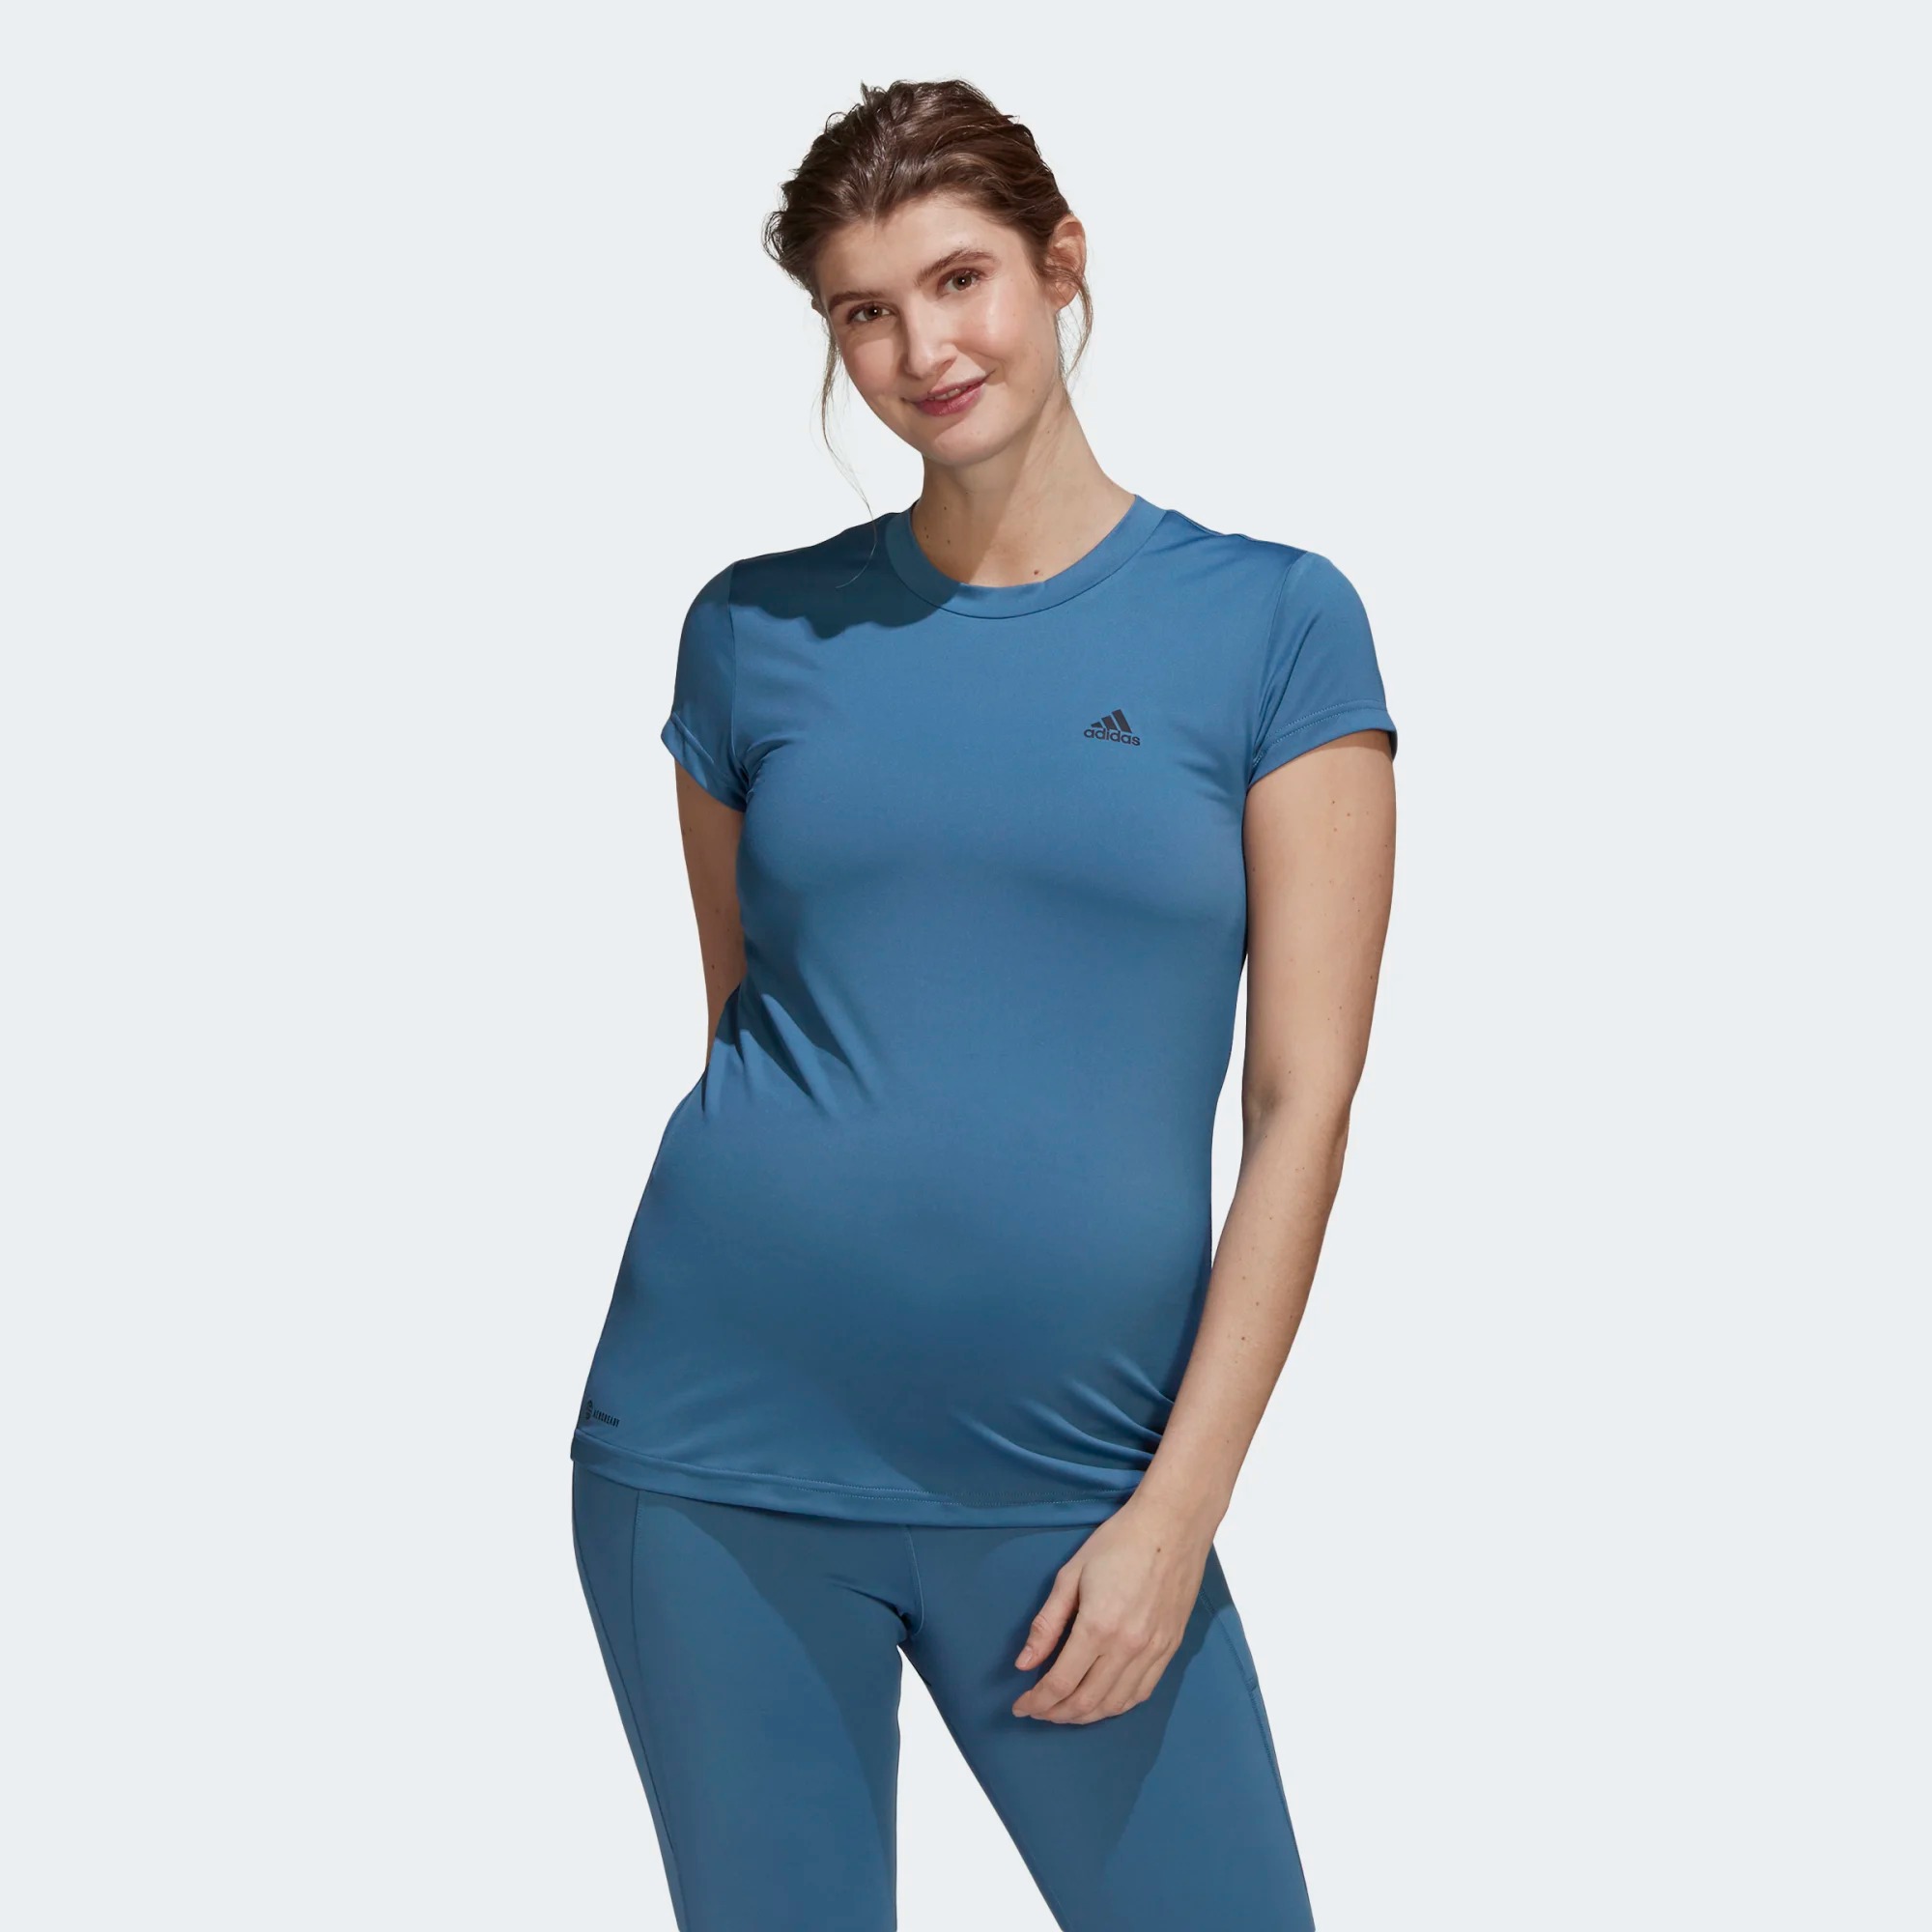 Футболка для беременных женская Adidas Maternity Tee красная XS